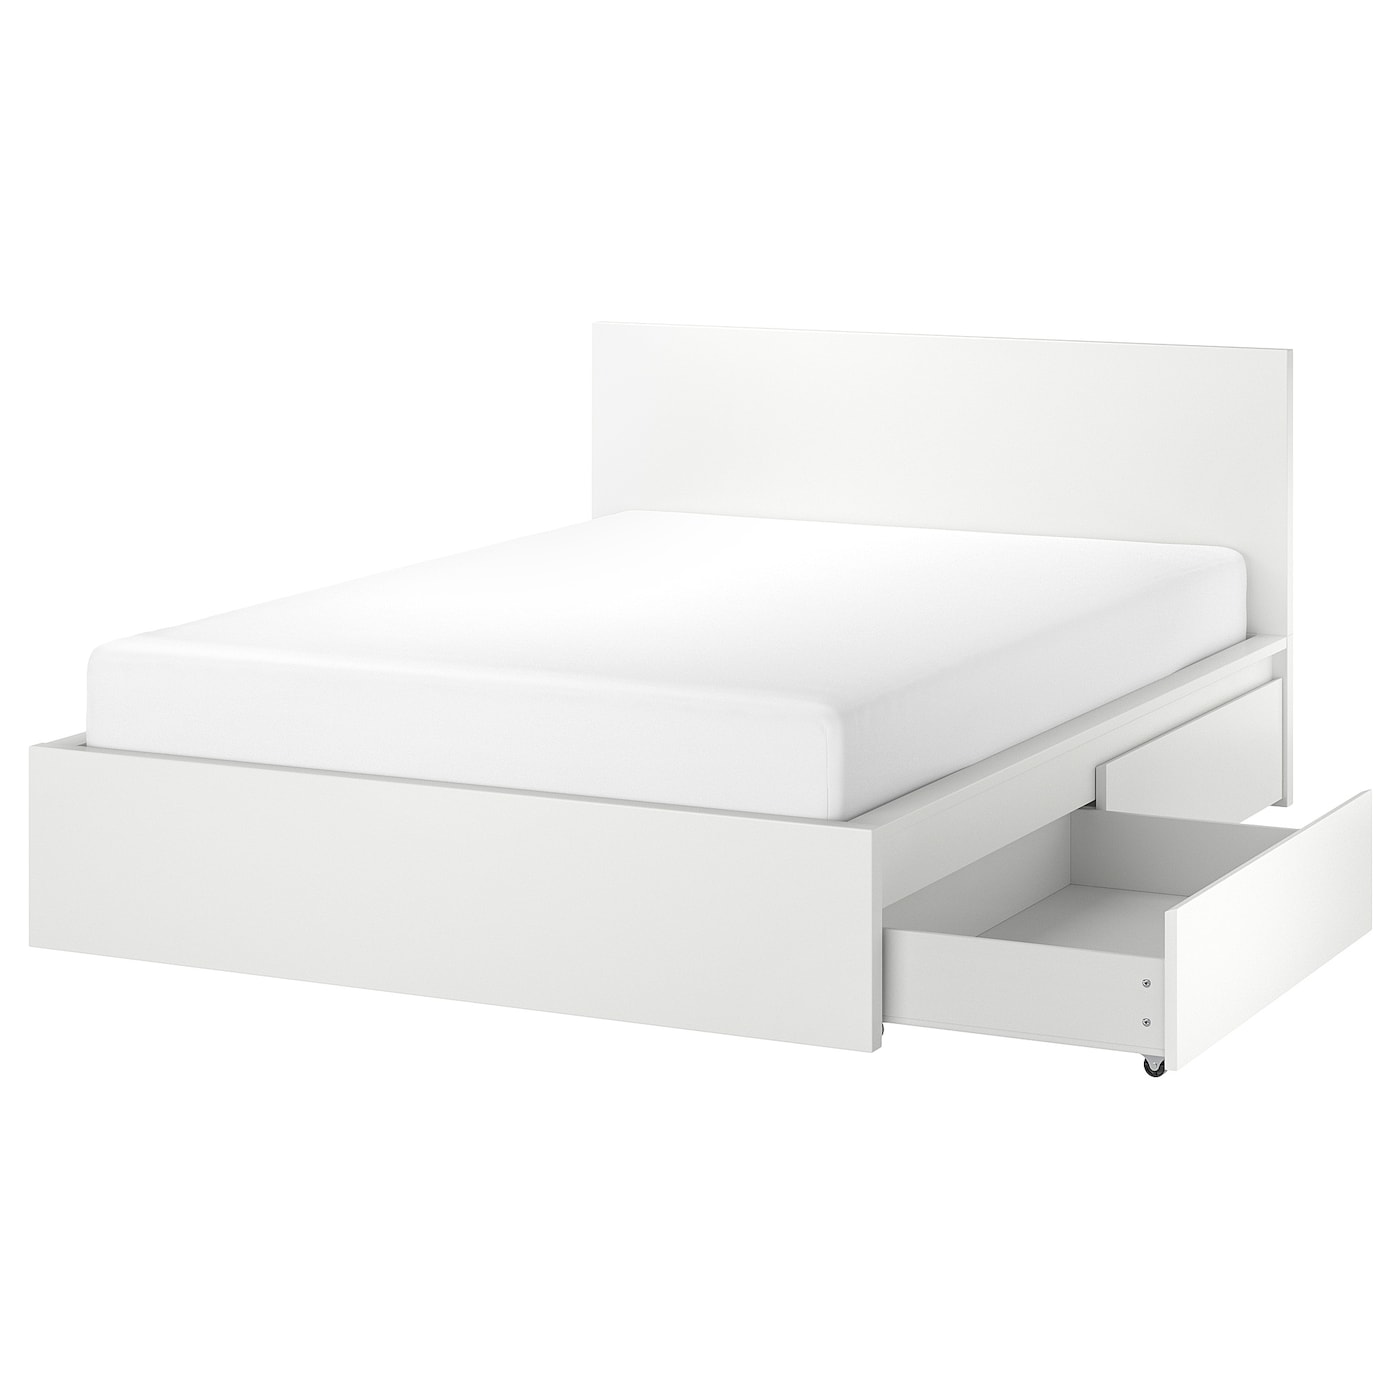 Каркас кровати с 2 ящиками для хранения - IKEA MALM/LINDBАDEN/LINDBÅDEN, 160х200 см, белый МАЛЬМ/ЛИНДБАДЕН ИКЕА